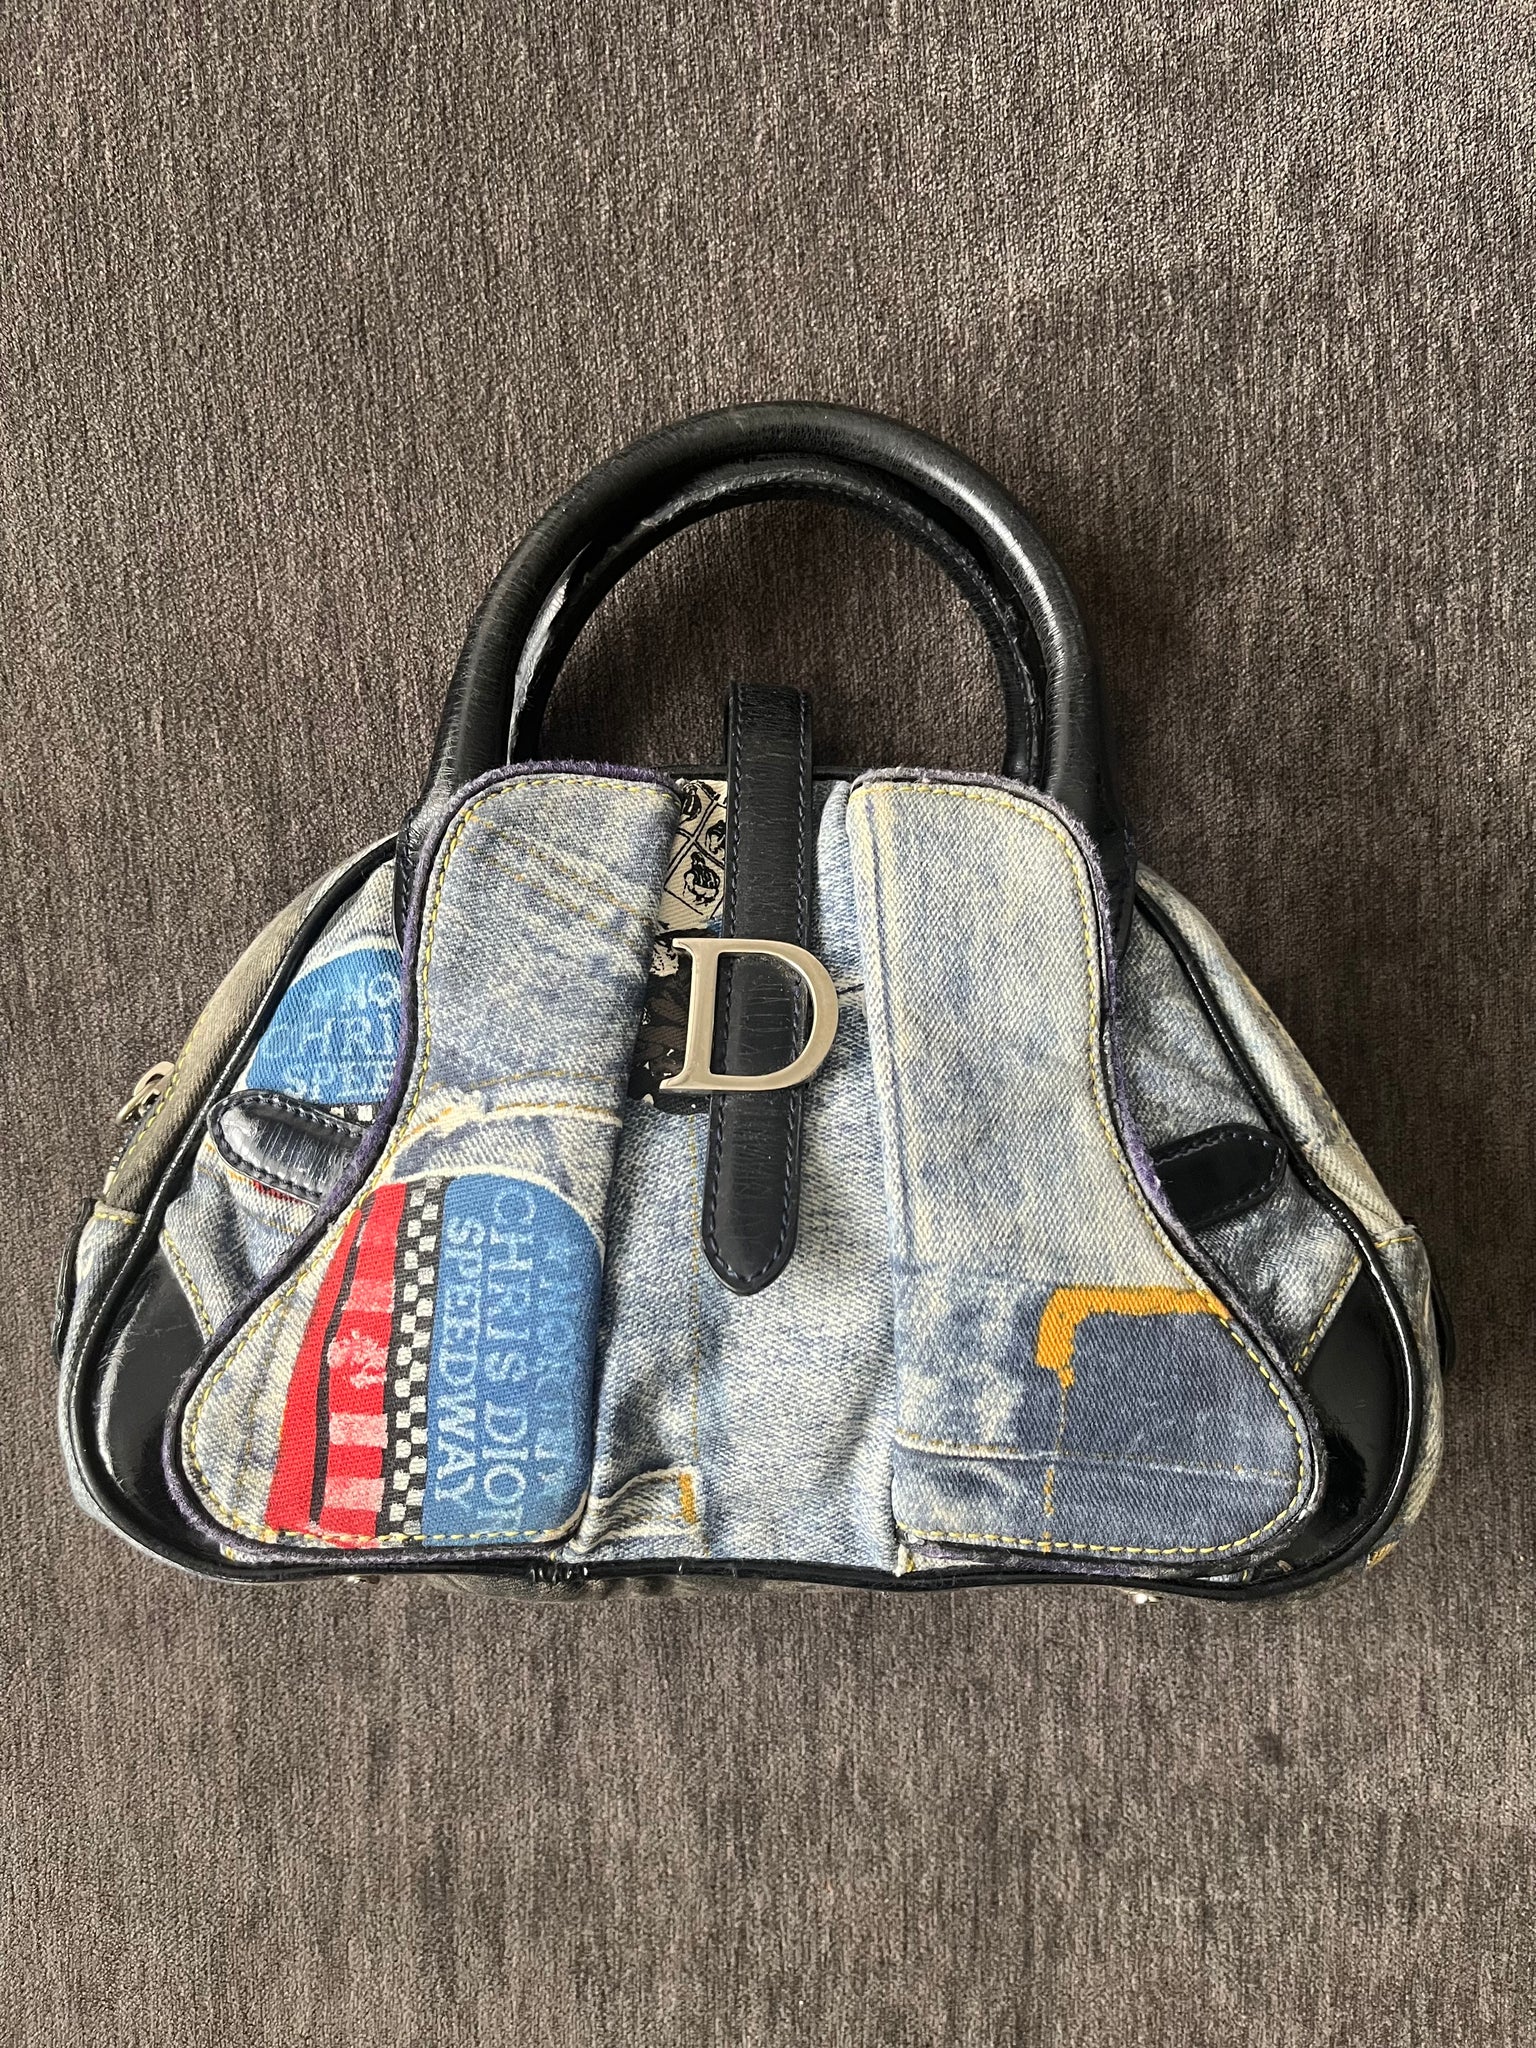 Dior vintage saddle bag review 